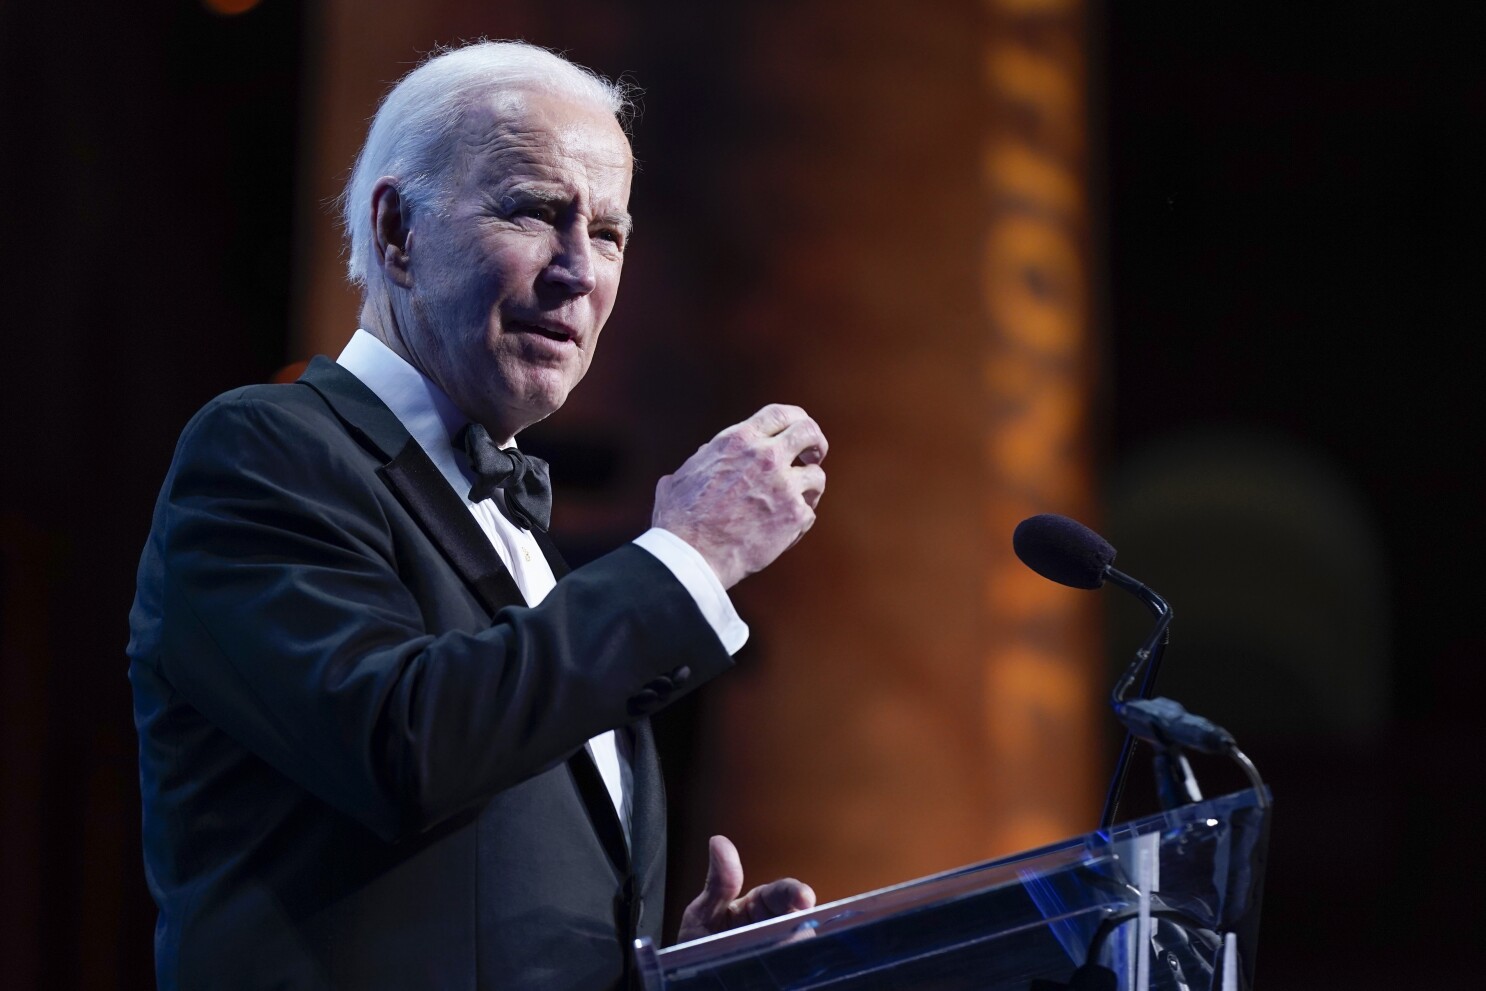 Biden hablará con líder chino sobre invasión de Ucrania - Los Angeles Times